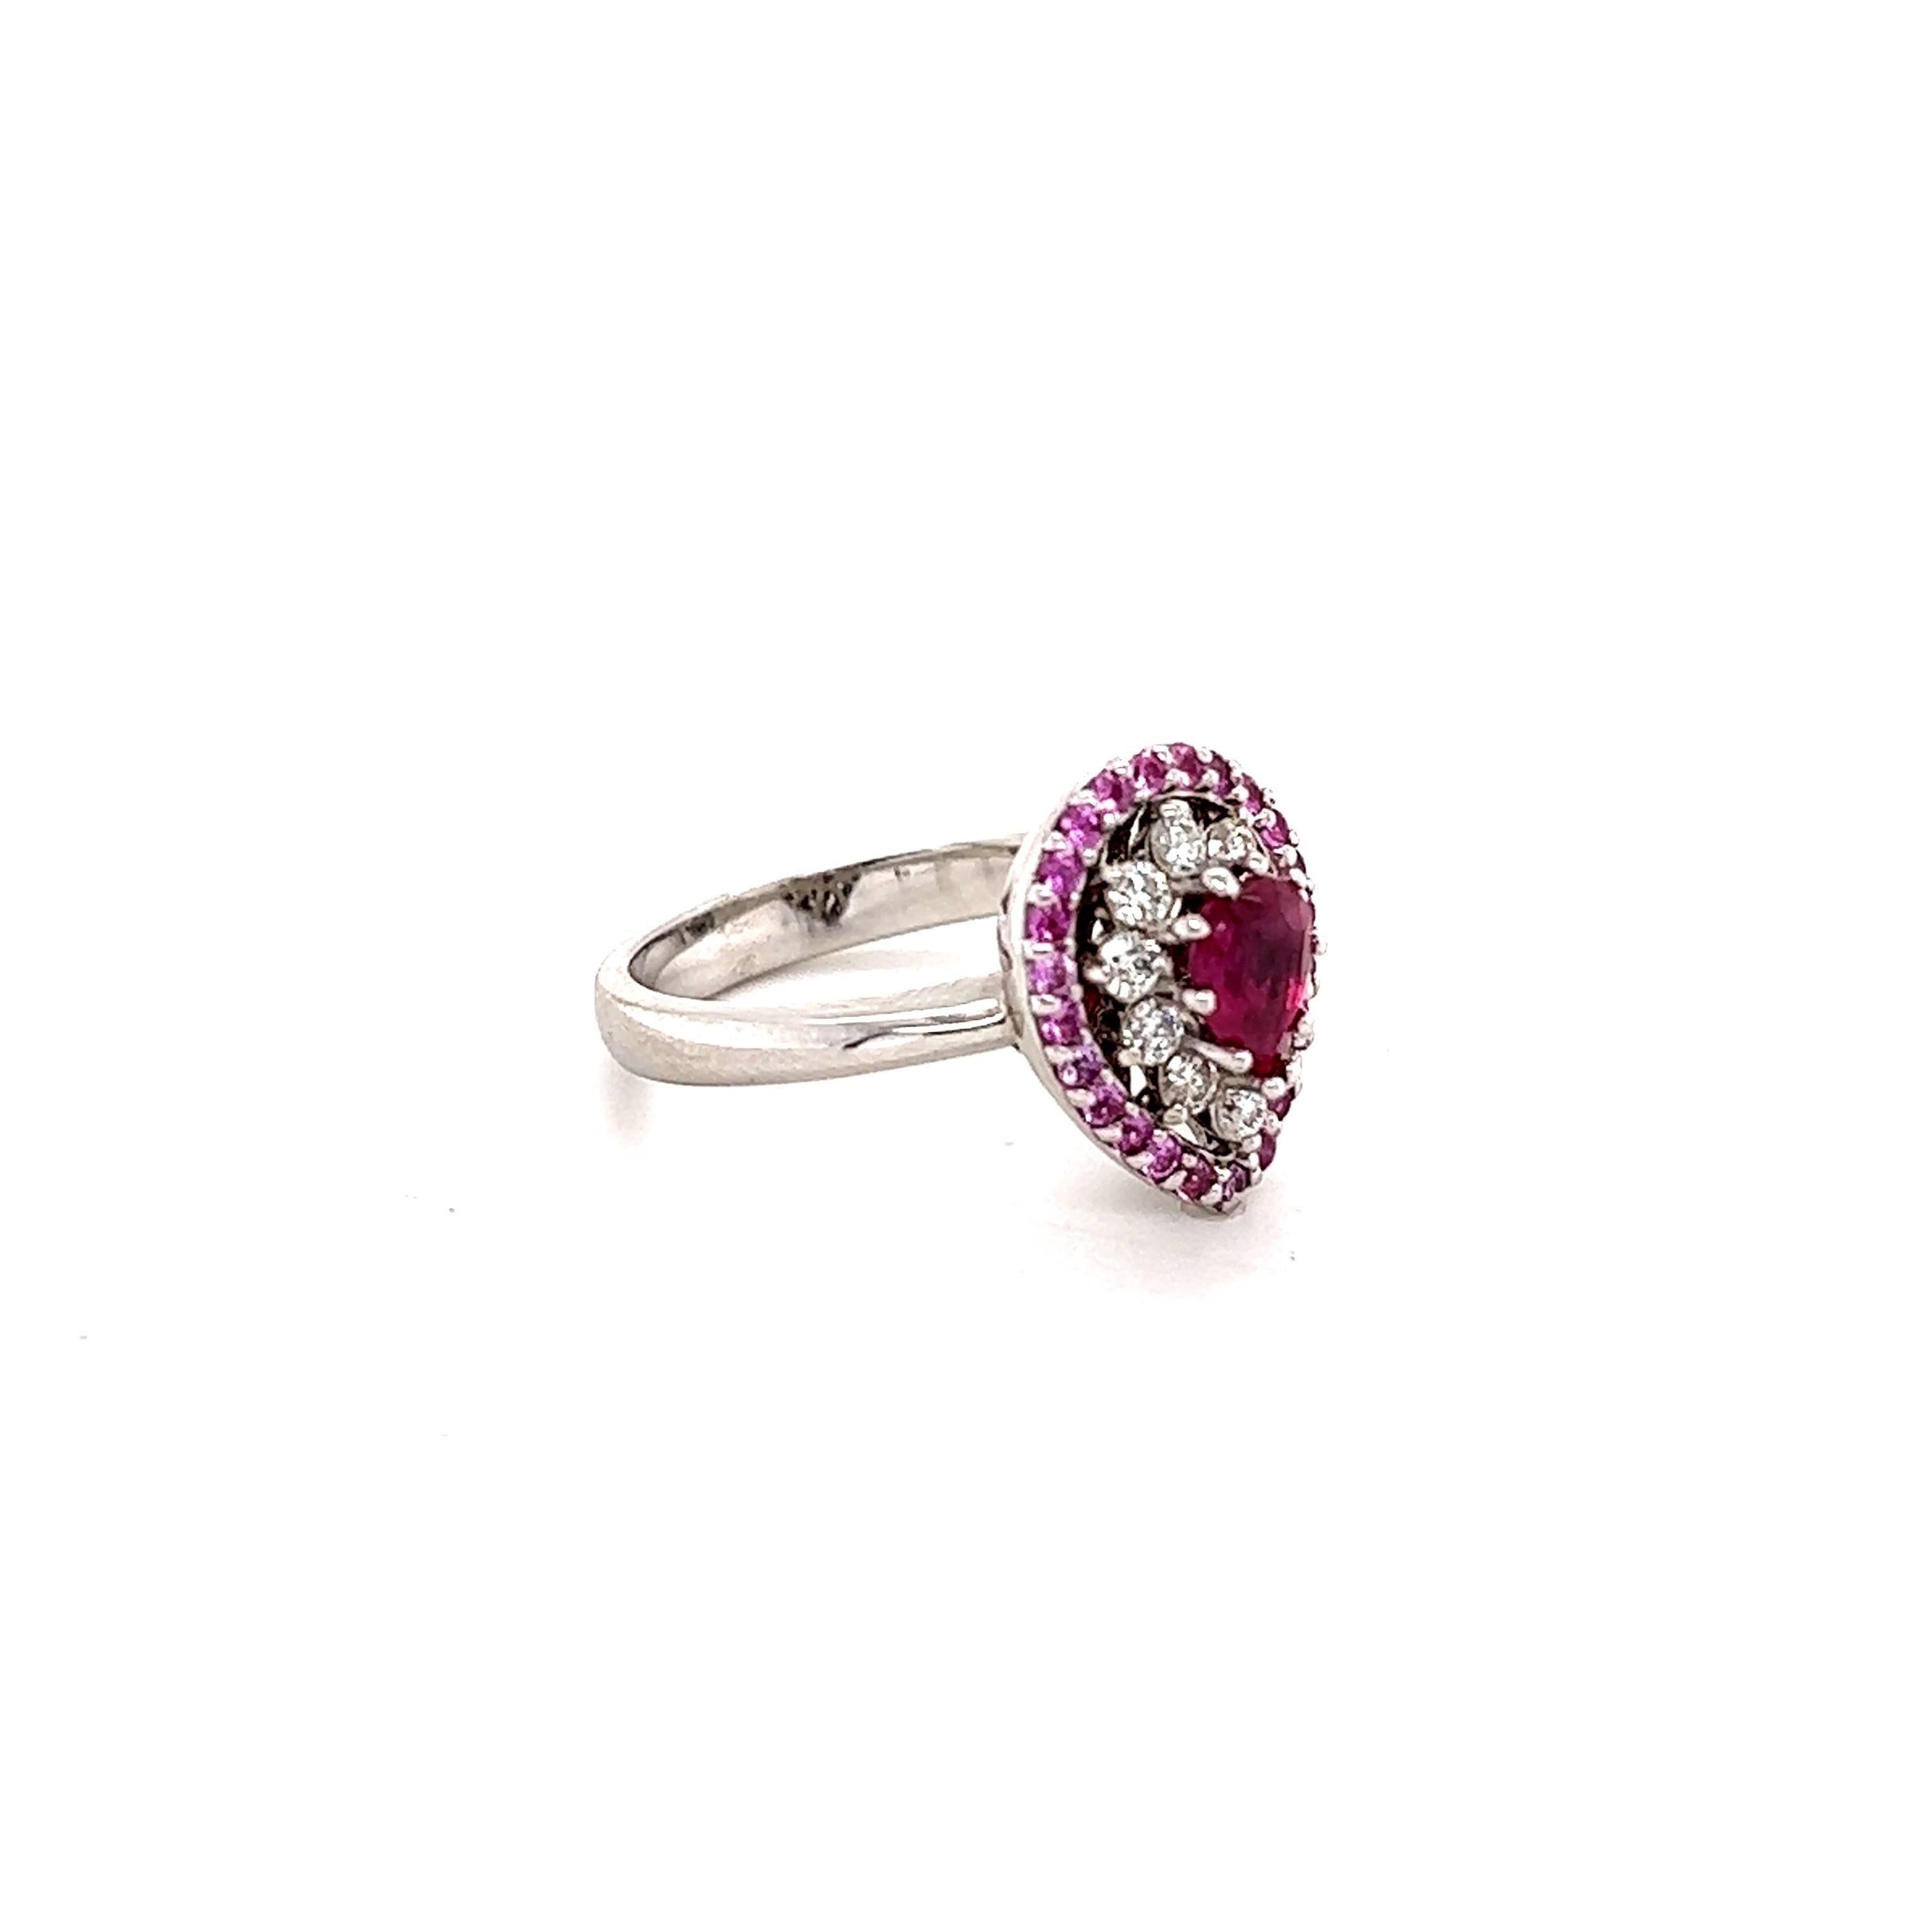 Dieser Ring hat einen Rubin im Birnenschliff, der etwa 6 mm x 4 mm groß ist. Es hat auch 24 Round Cut Pink Sapphires, die 0,37 Karat wiegen und es gibt 10 Round Cut Diamanten, die 0,28 Karat wiegen. (Reinheit: VS, Farbe: H) Das Gesamtkaratgewicht